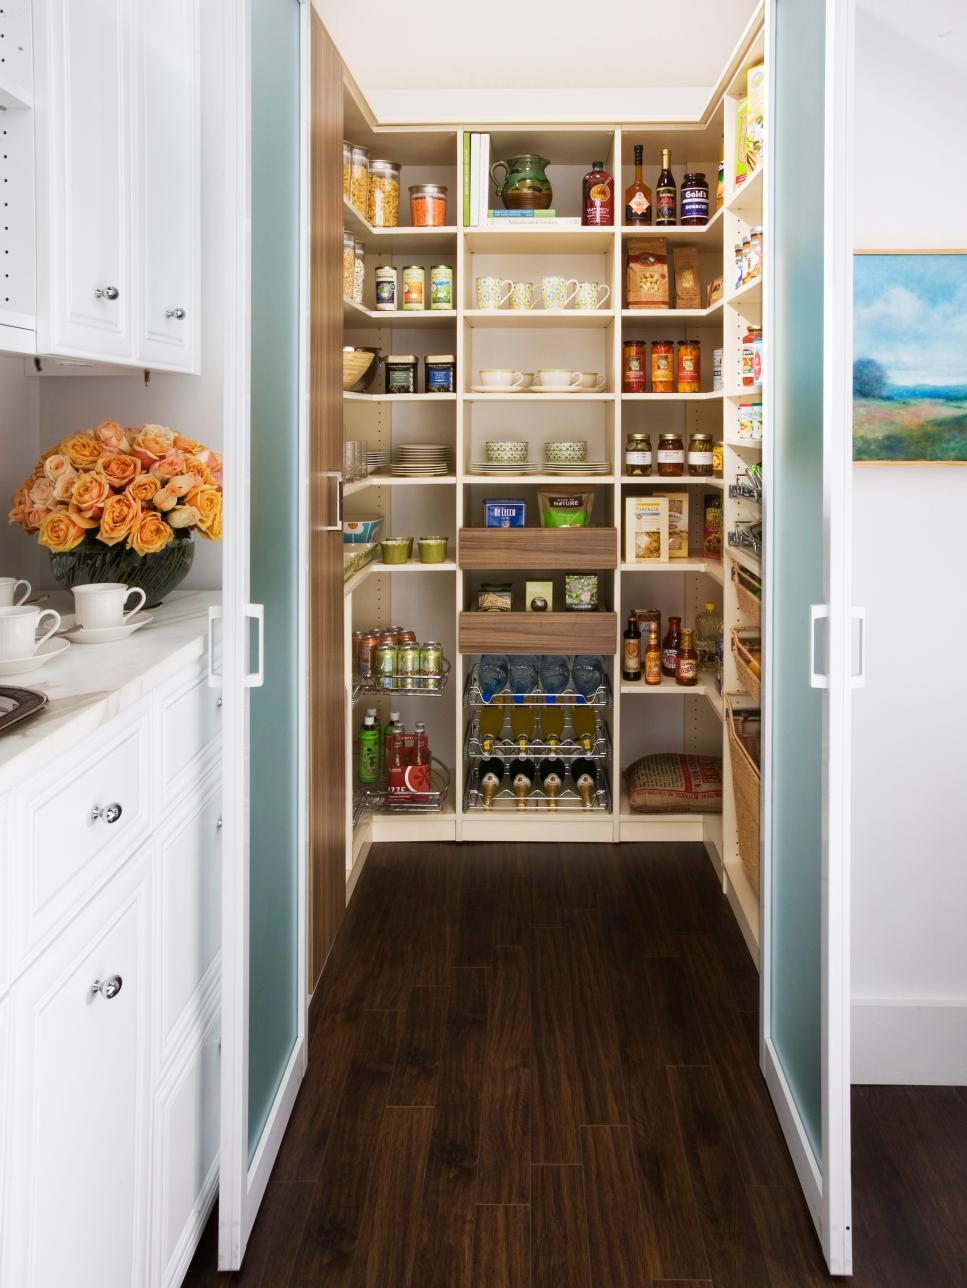 Under cabinet storage solutions  Kitchen cupboard storage, Small kitchen  storage solutions, Small kitchen storage